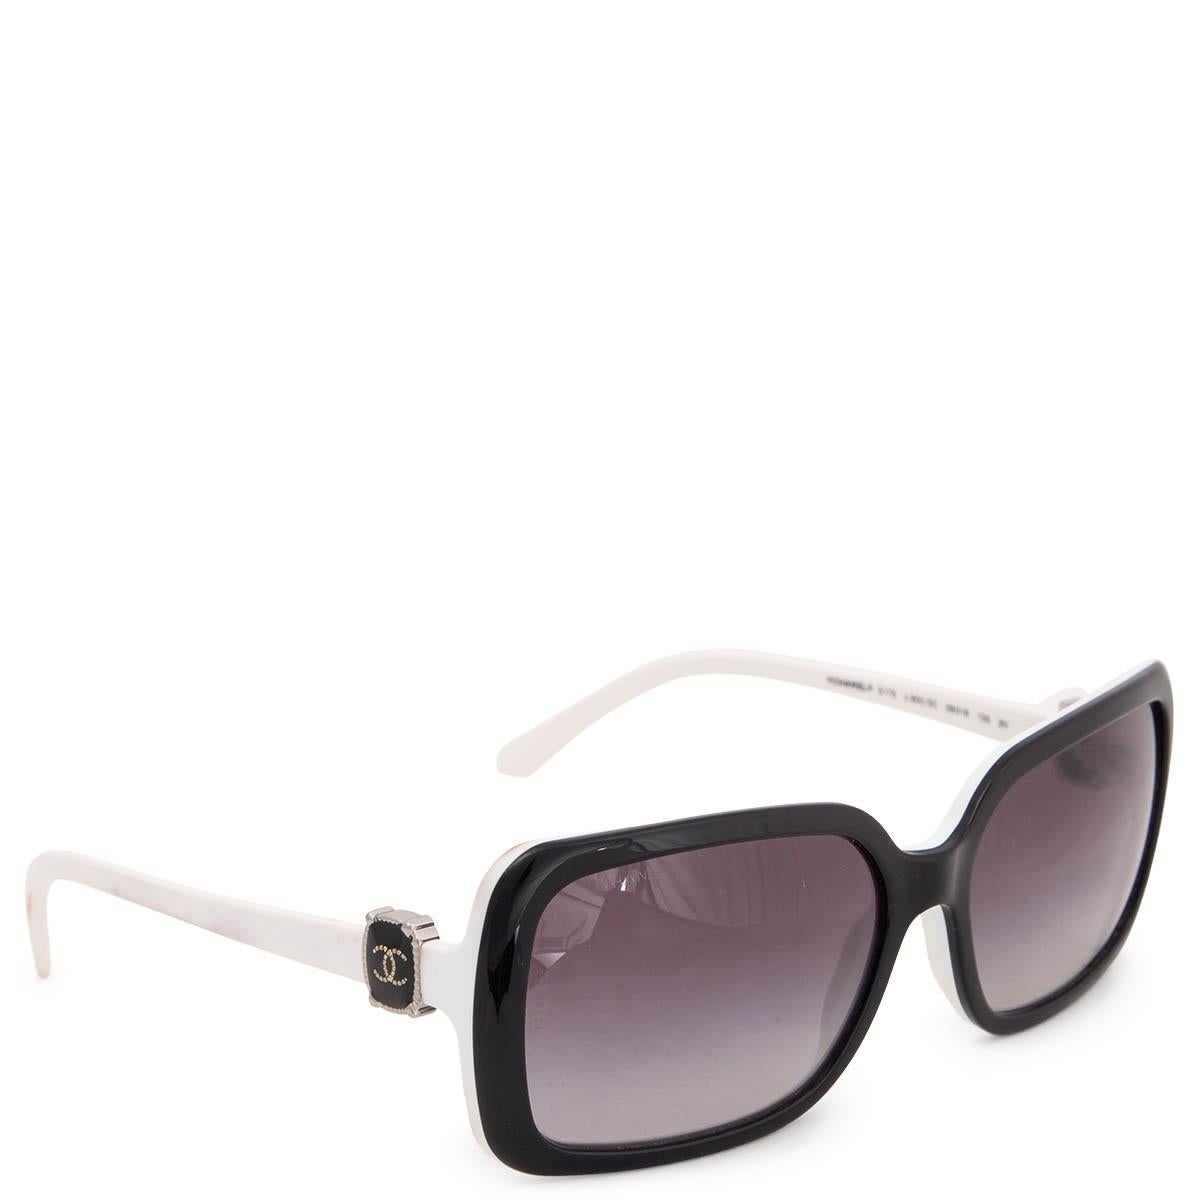 100% authentische Chanel 5175 c.900/3c Sonnenbrille mit grauen Verlaufsgläsern und einem schwarz-weißen Acetatrahmen. CC-Logo-Details an der Seite. Die Brille wurde getragen und weist einige dunkle Flecken auf dem weißen Rahmen und den Bügeln auf.